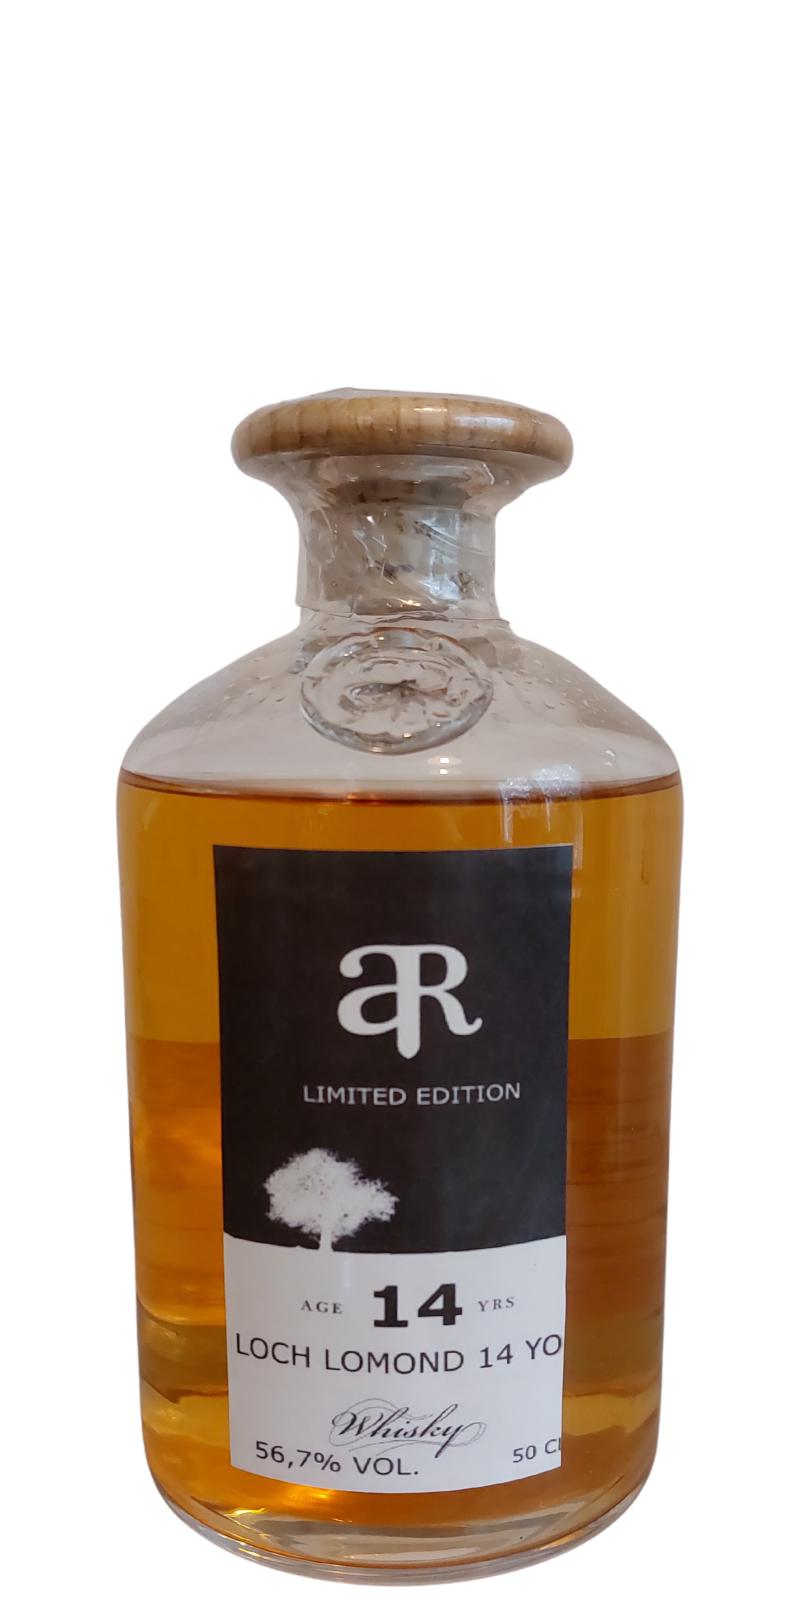 Loch Lomond 14yo ArW Limited Edition Bourbon Cask 56.7% 500ml